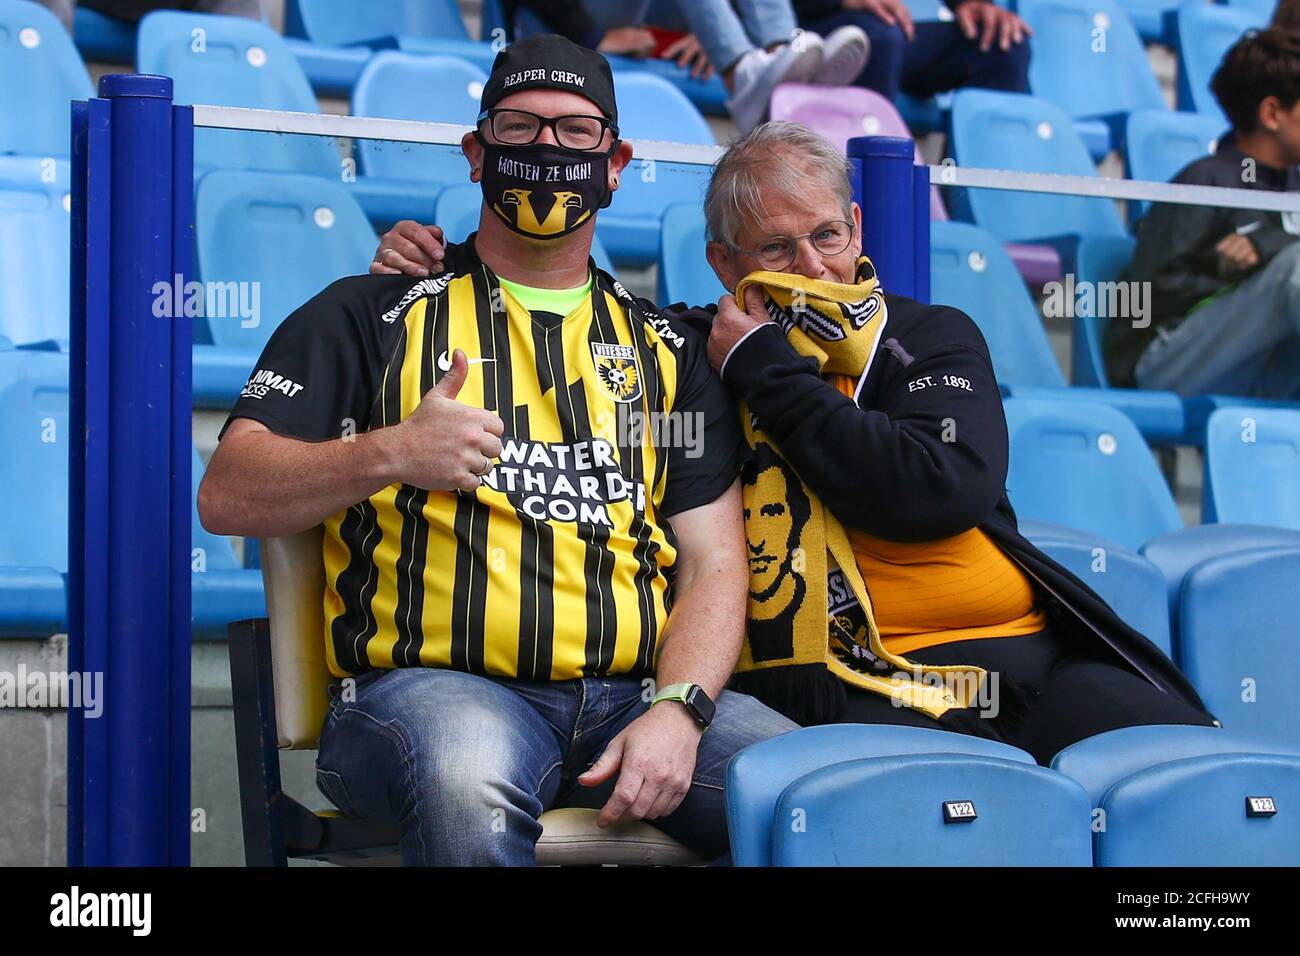 ARNHEM, PAÍSES BAJOS - 5 DE SEPTIEMBRE: Los fans de Vitesse con una máscara para la boca antes del partido amistoso entre Vitesse y SV Darmstadt 98 el 5 de septiembre de 2020 en Arnhem, países Bajos. *** Título local *** Foto de stock